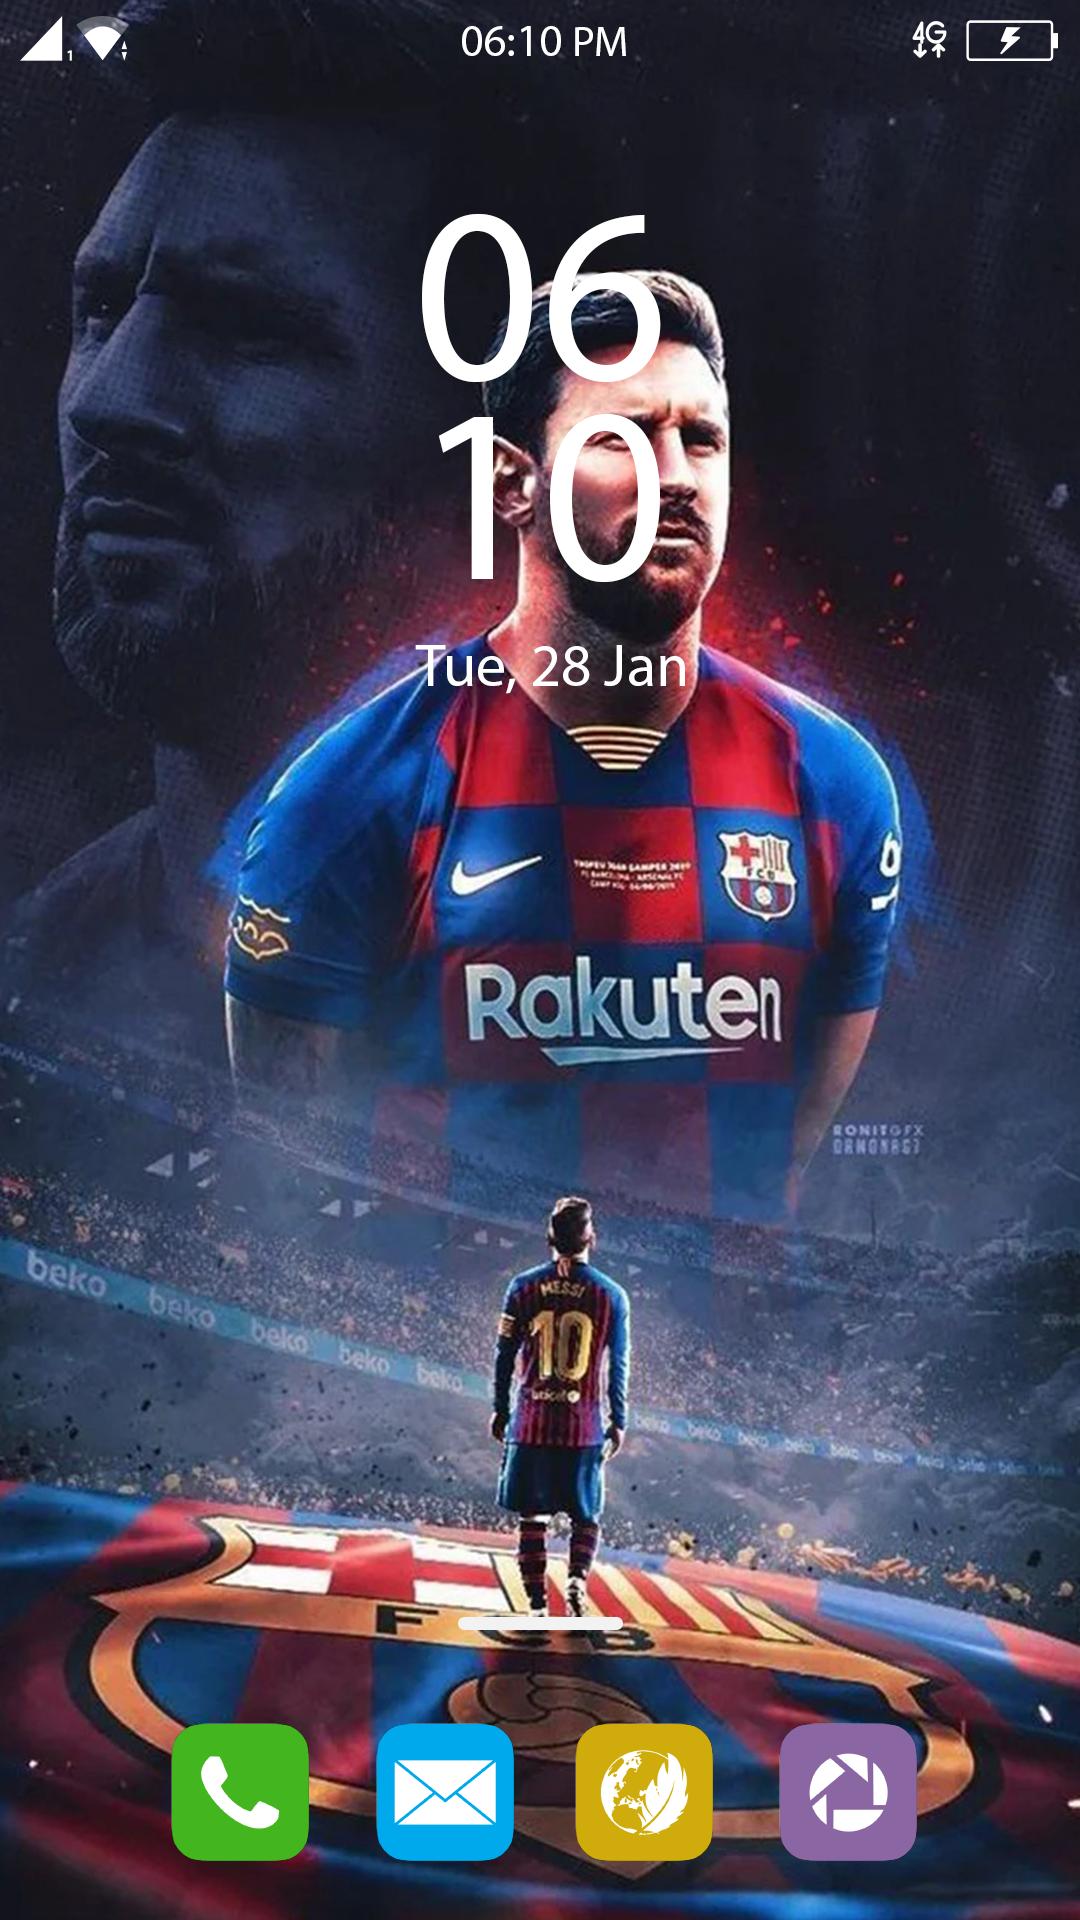 Thưởng thức những tấm hình nền điện thoại Messi trên điện thoại Android của bạn ngay bây giờ! Các hình nền chất lượng cao đem đến cho bạn trải nghiệm tuyệt vời khi sử dụng điện thoại của mình. Hãy tải về những tấm hình nền yêu thích của bạn và thưởng thức chúng ngay.